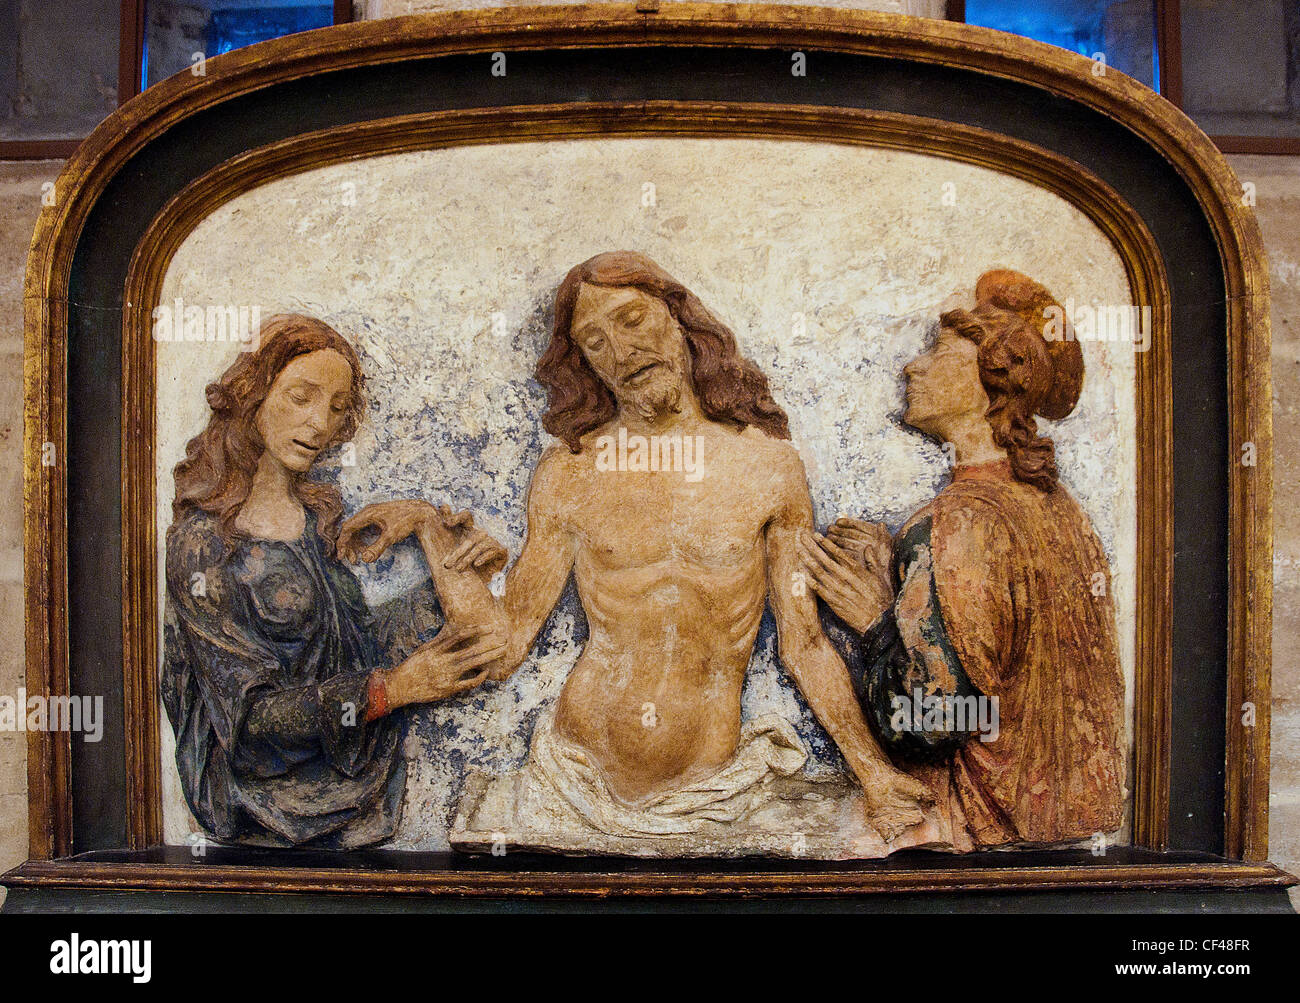 Toten Christus geliebt von St. Johannes Evangelist Mary Magdalene durch Dominic von Paris Domenico del Cavallo Padua 15 Cent Italienisch Stockfoto